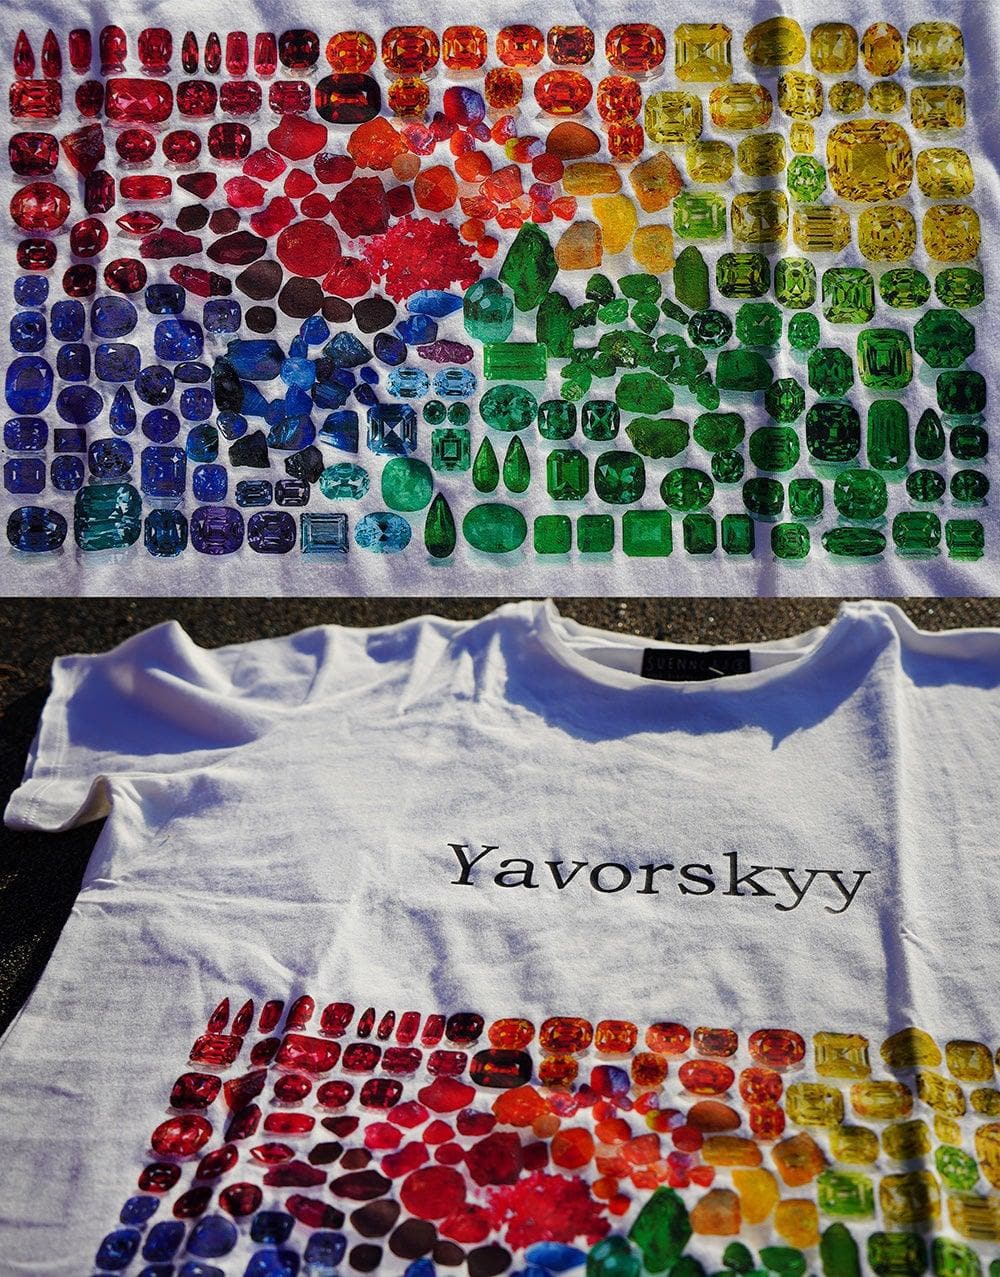 Yavorskyy T-Shirt - Yavorskyy